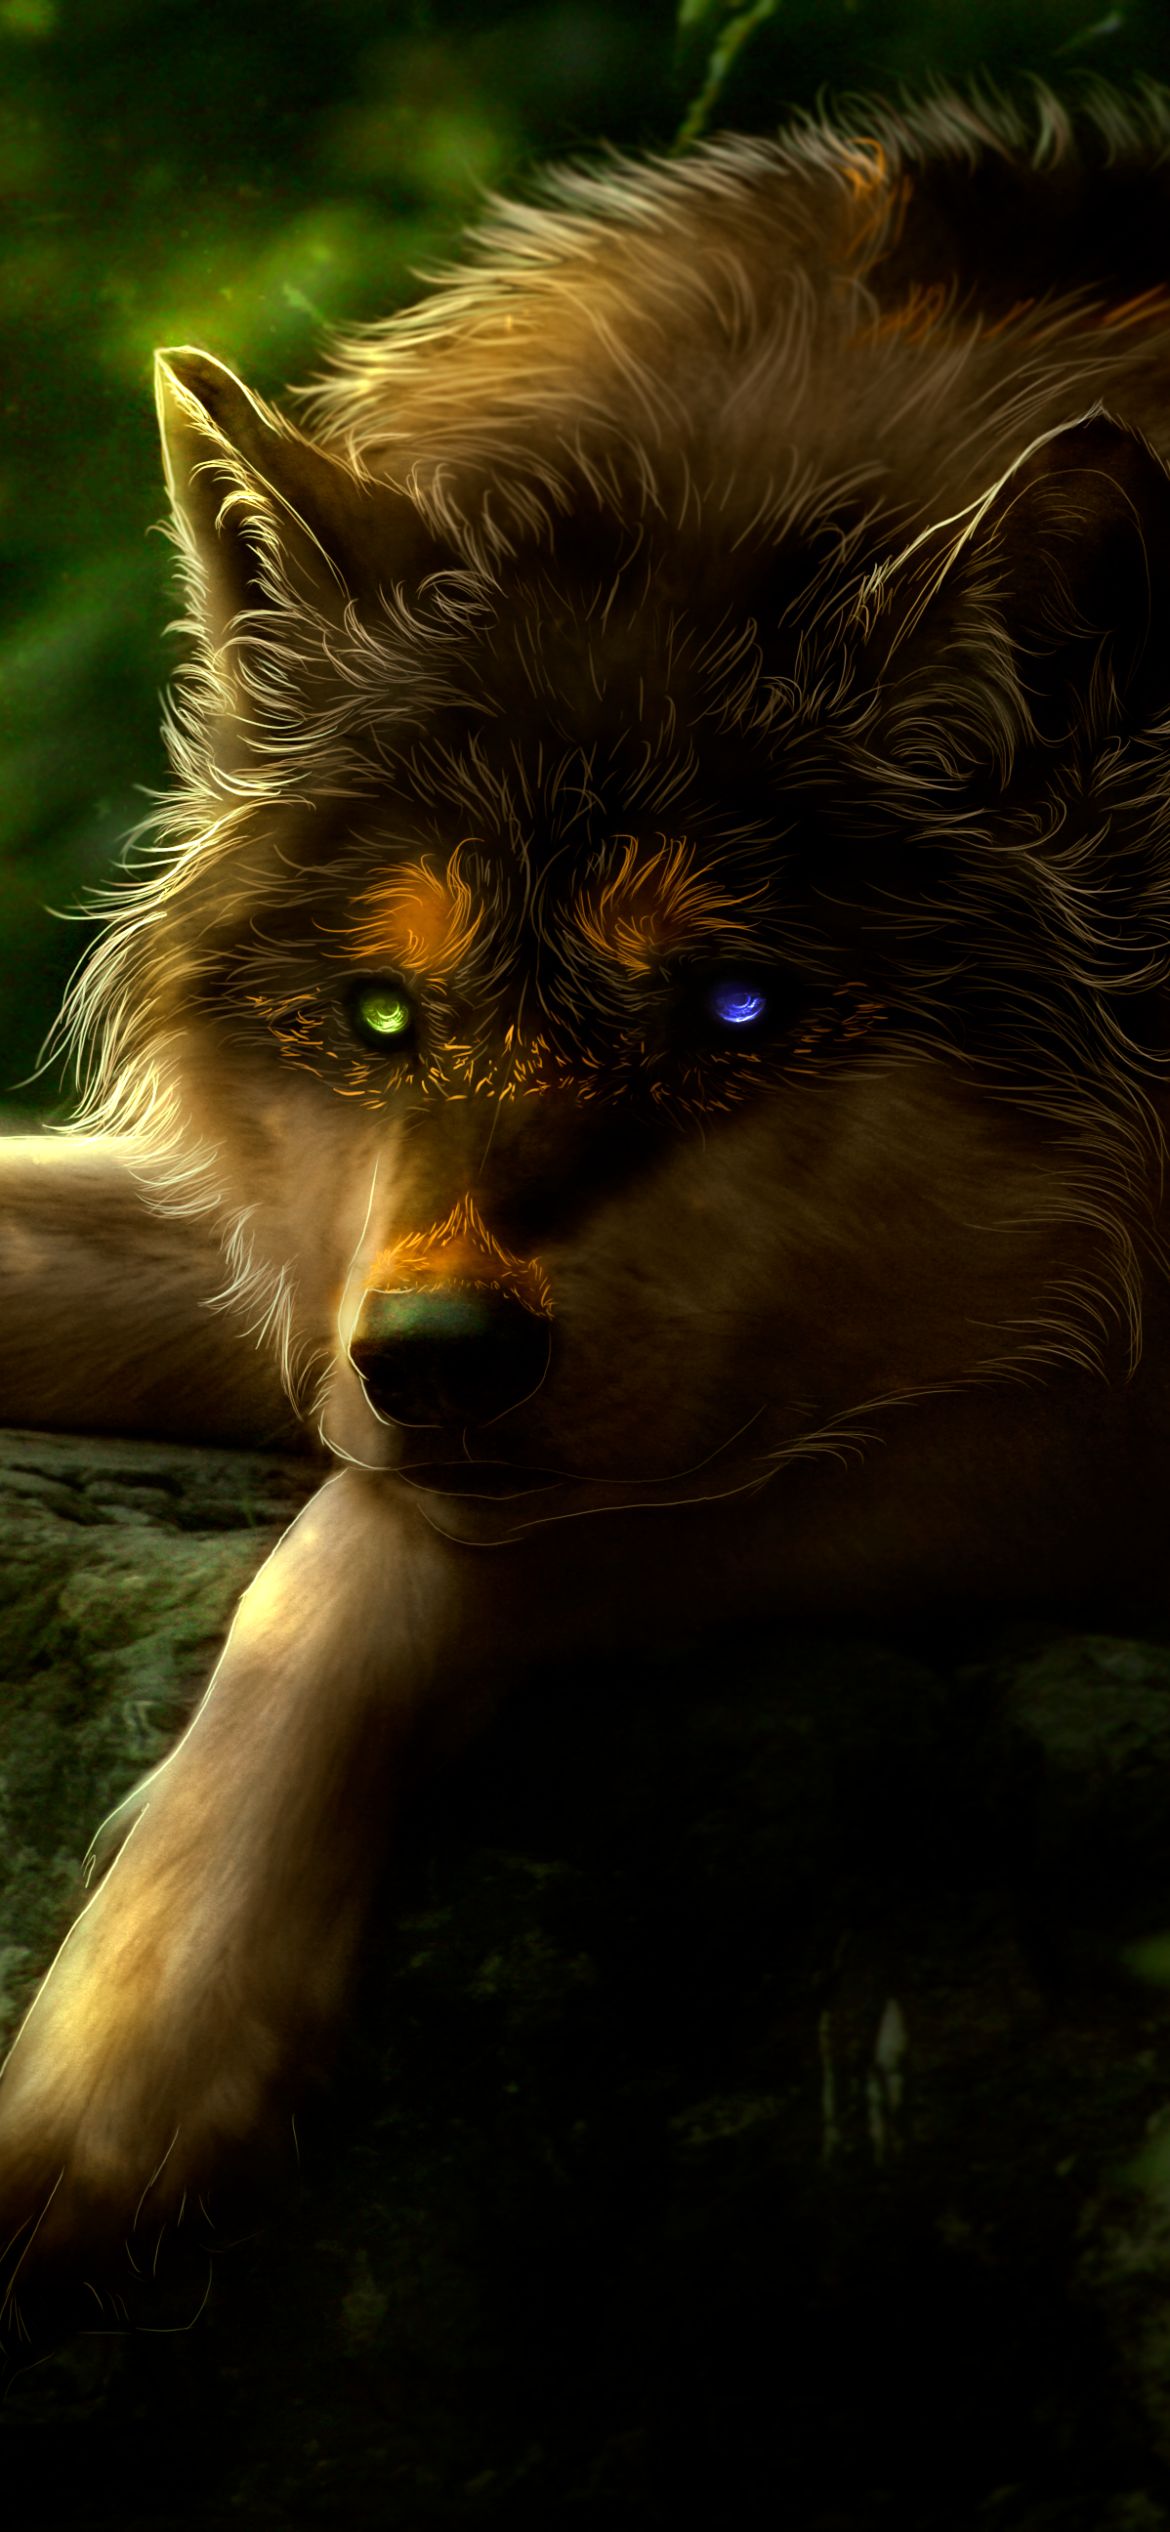 Descarga gratuita de fondo de pantalla para móvil de Animales, Lobo, Heterocromía, Wolves.